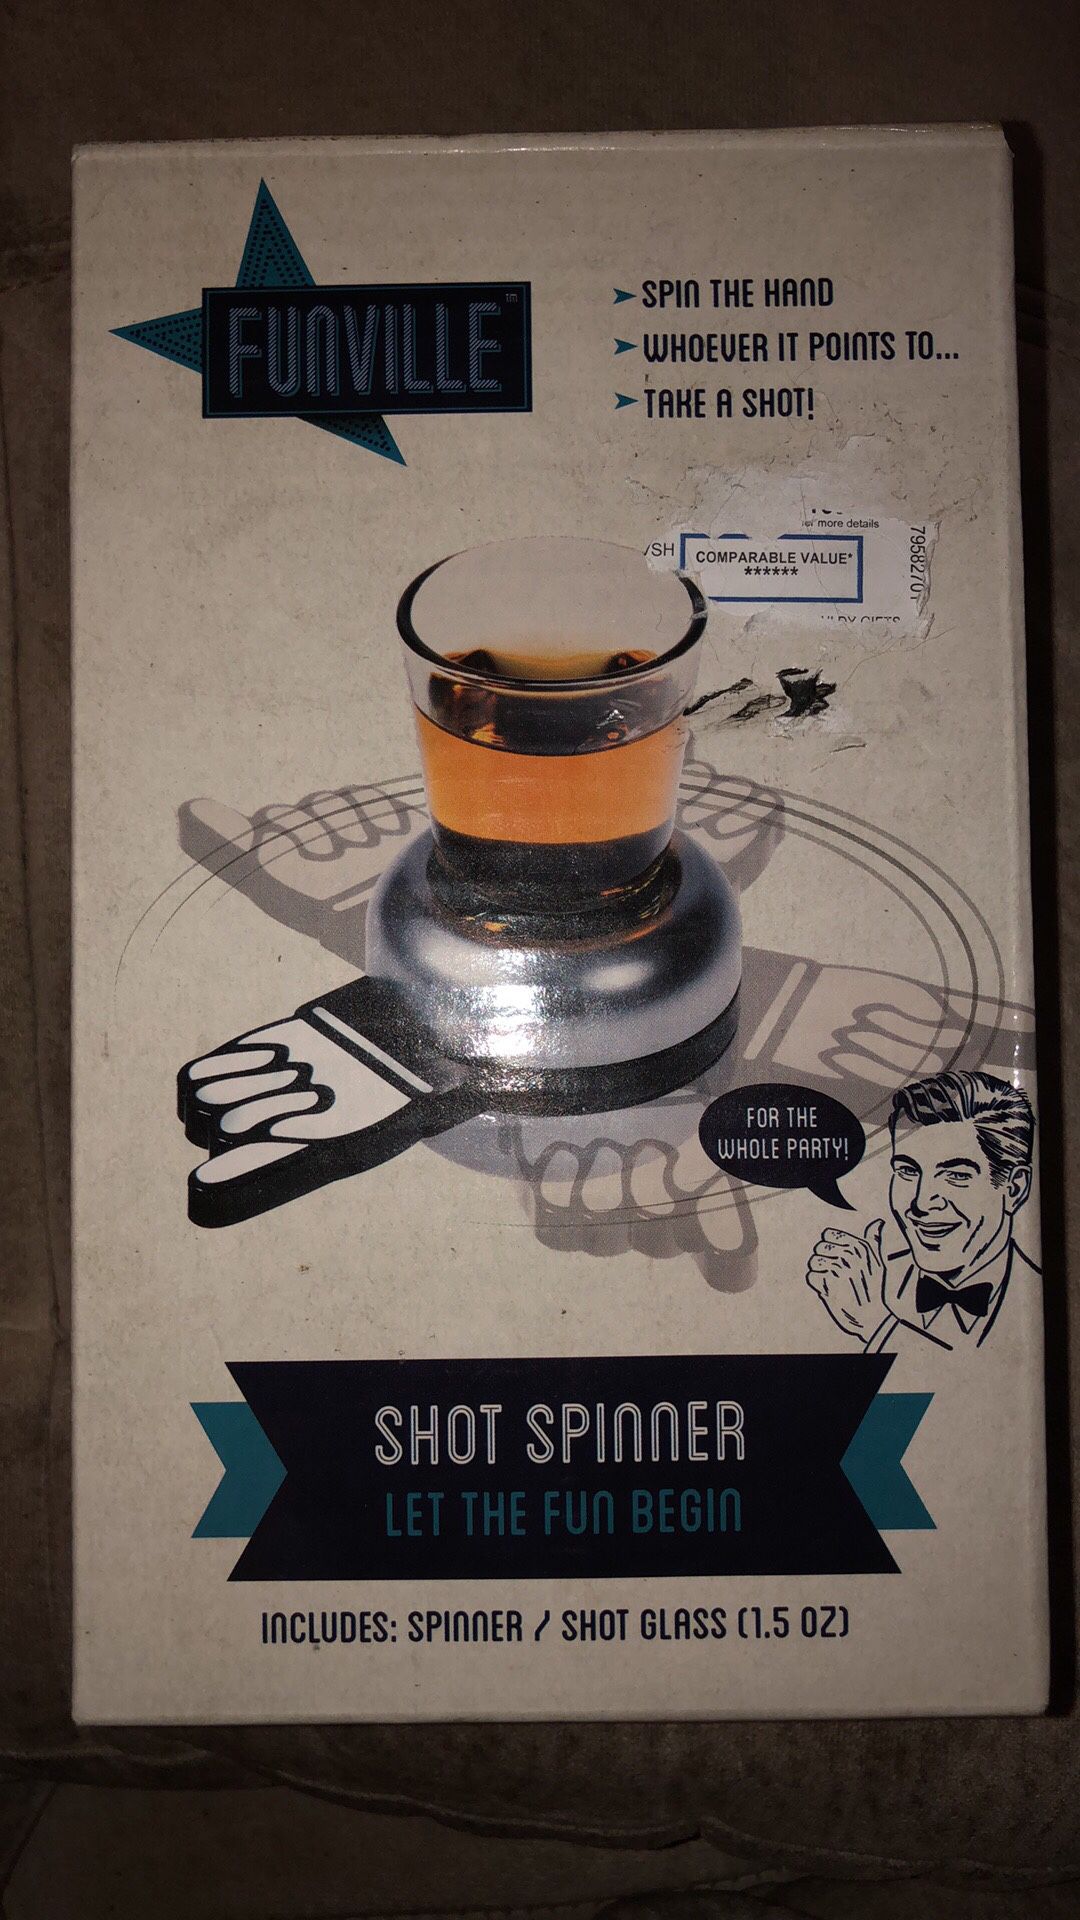 Shot spinner game